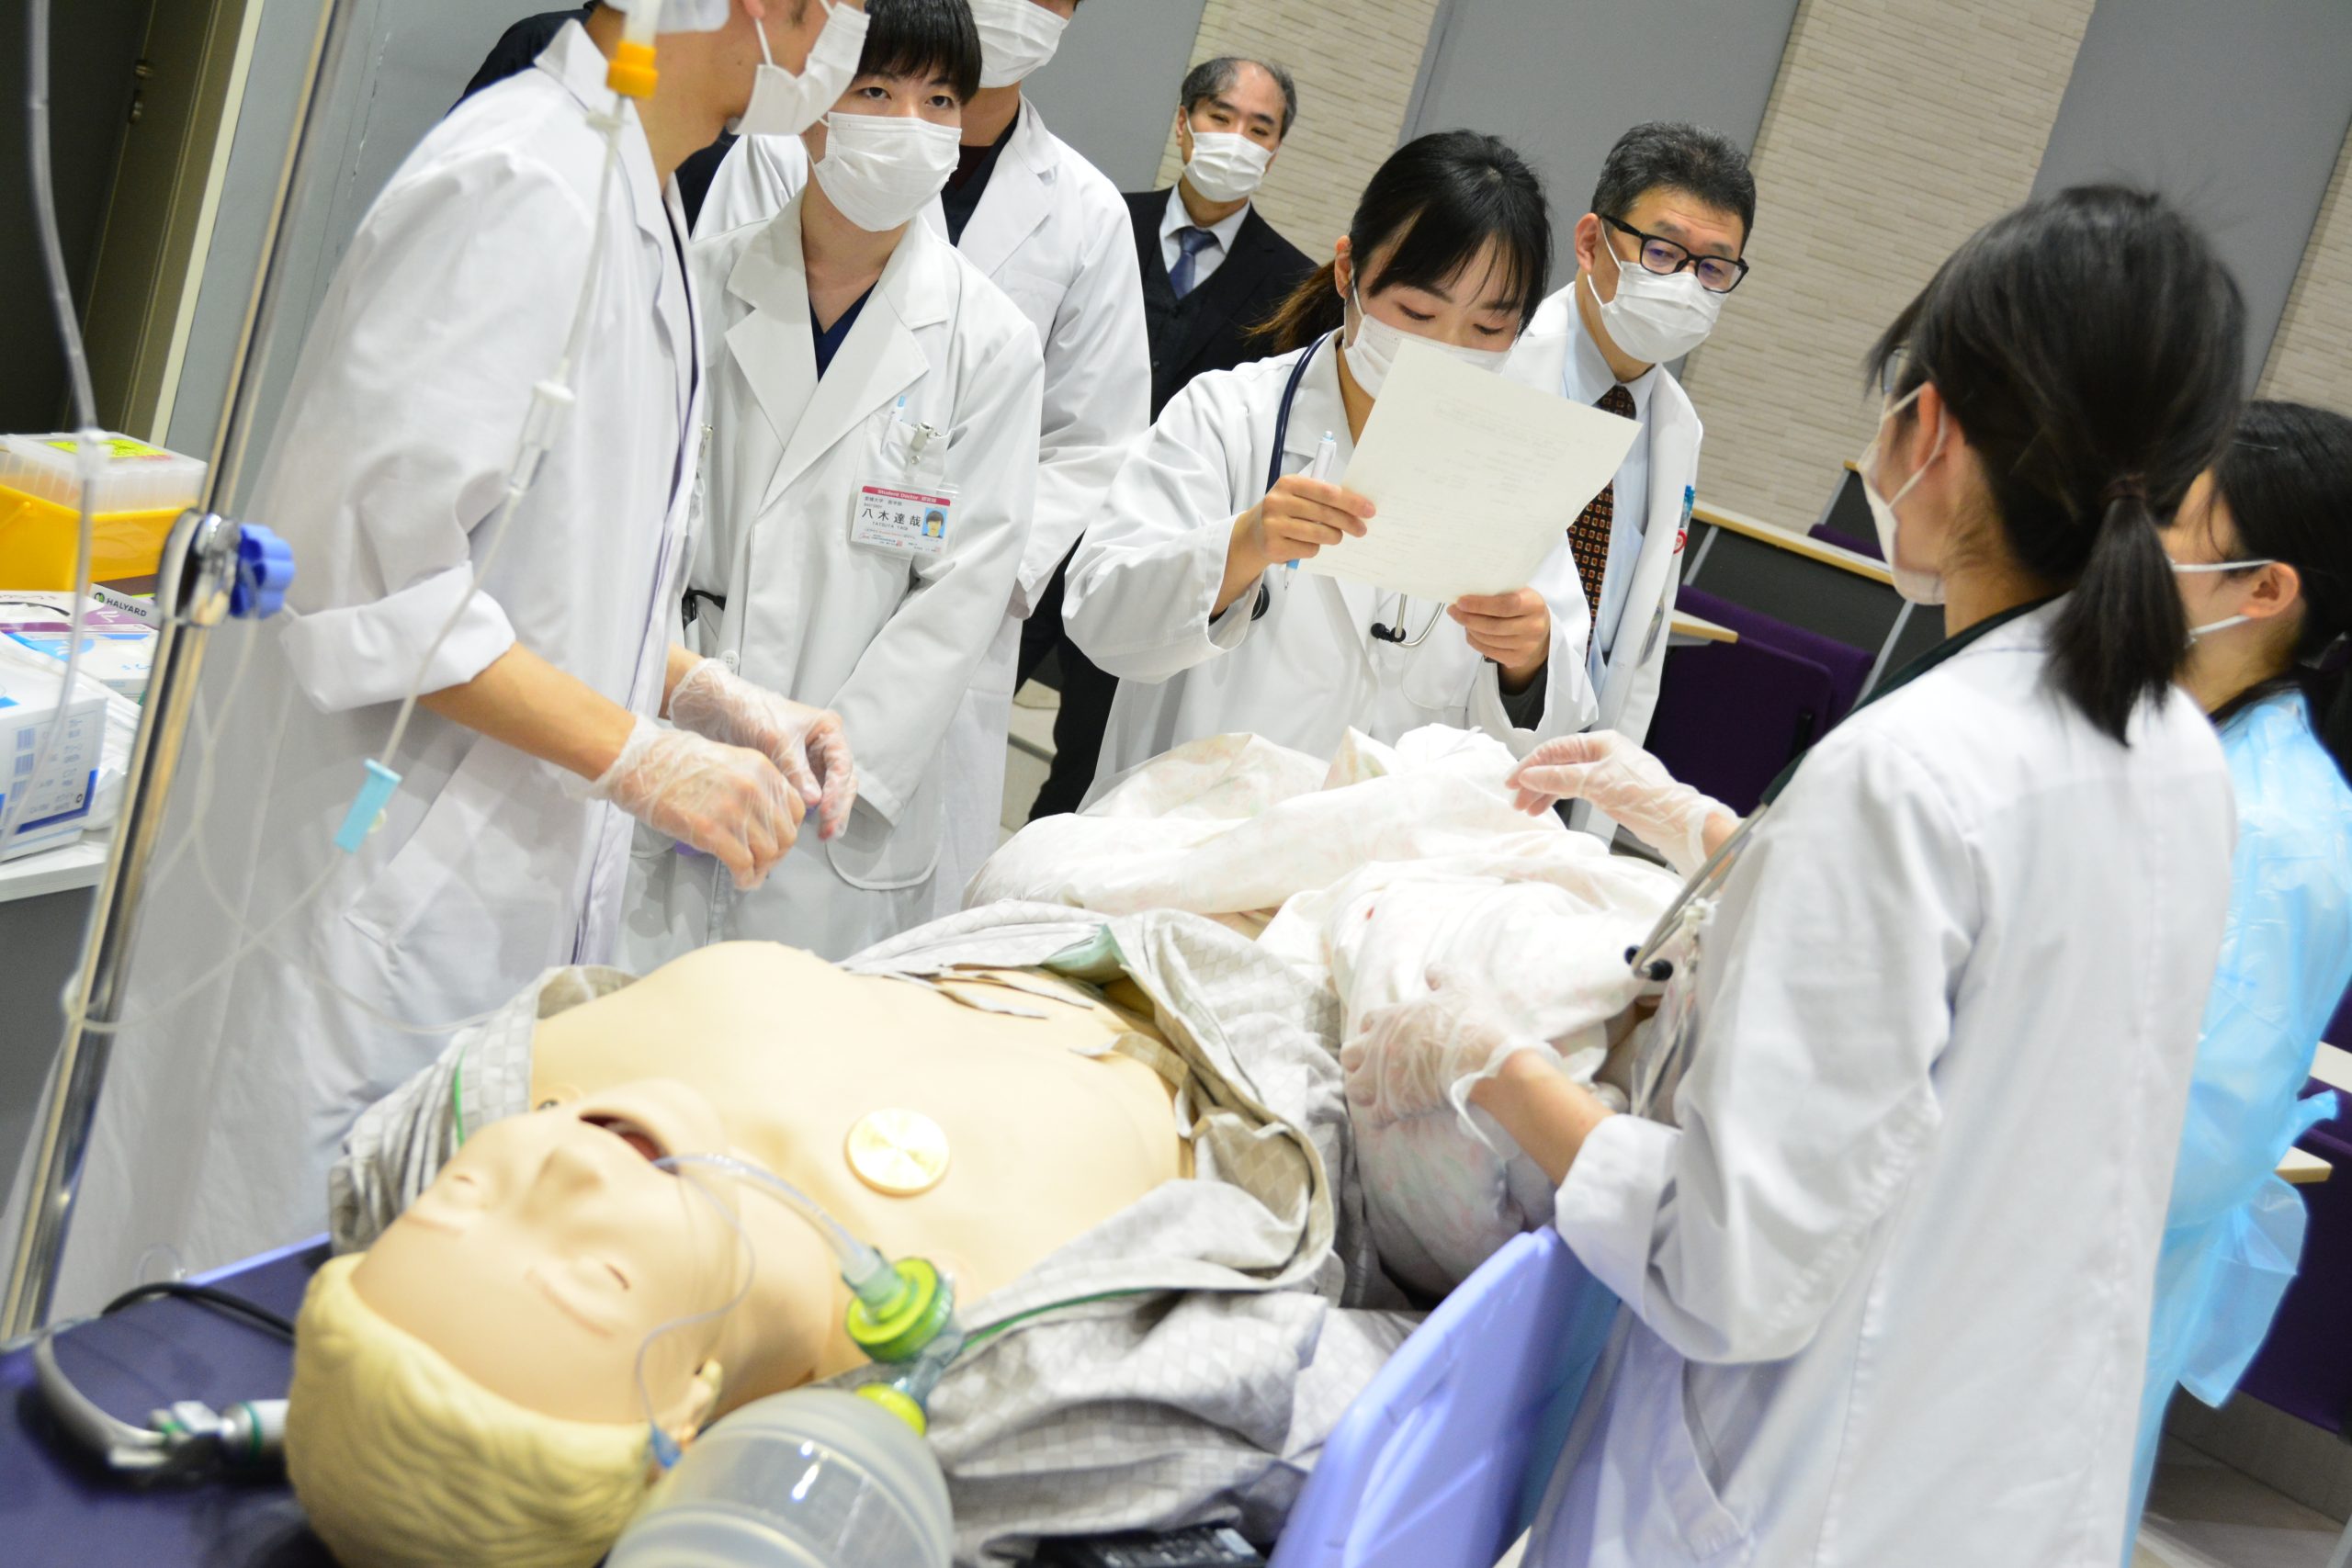 第３回愛媛大学医学部シミュリンピック大会を開催しました。